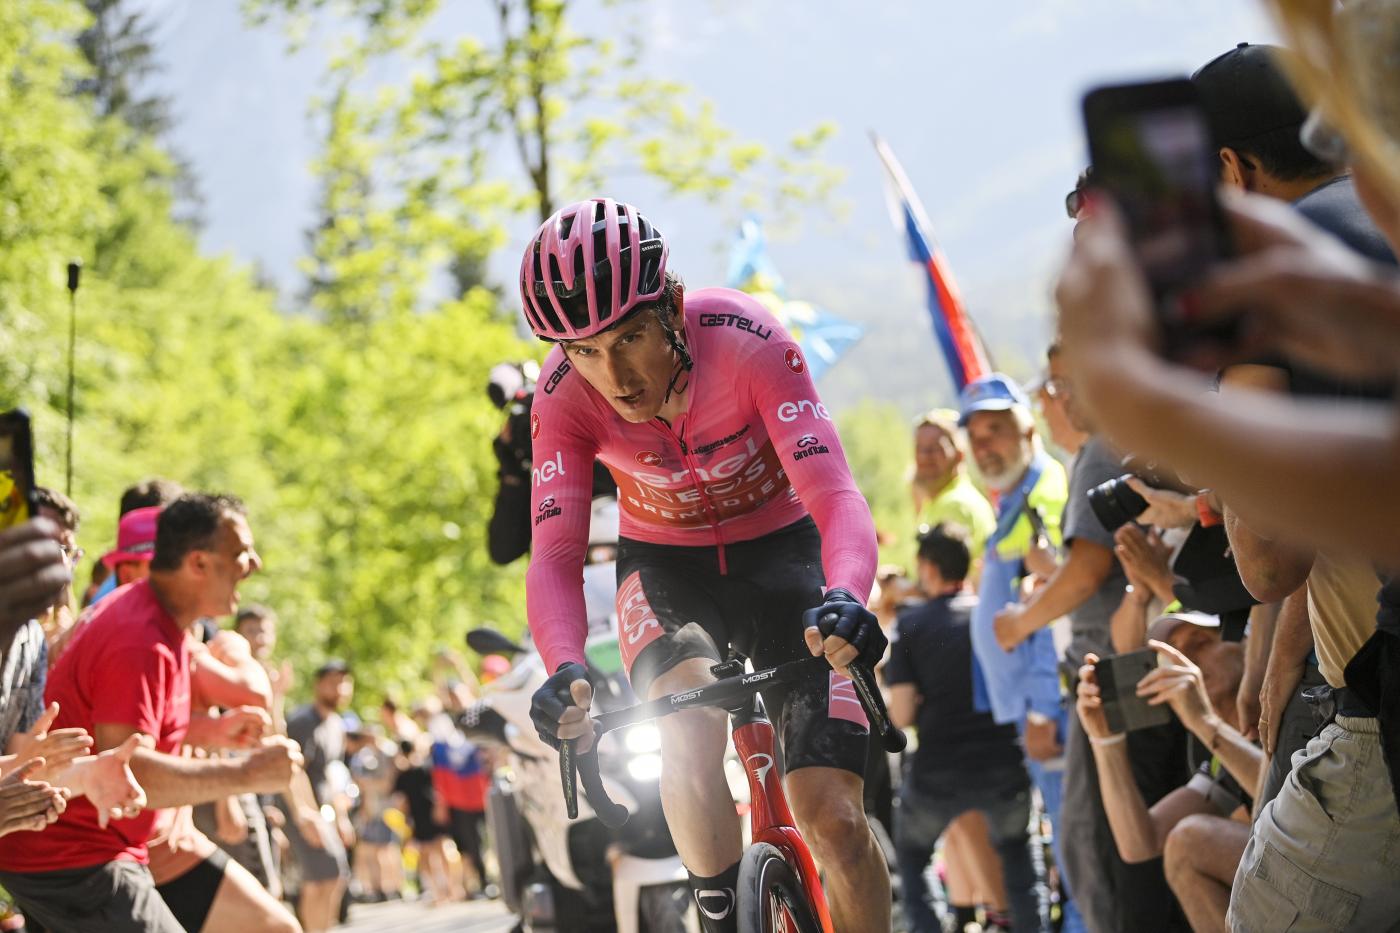 Ciclismo, Geraint Thomas: “Il Giro d’Italia? Sto meglio dell’anno scorso, voglio vincerlo